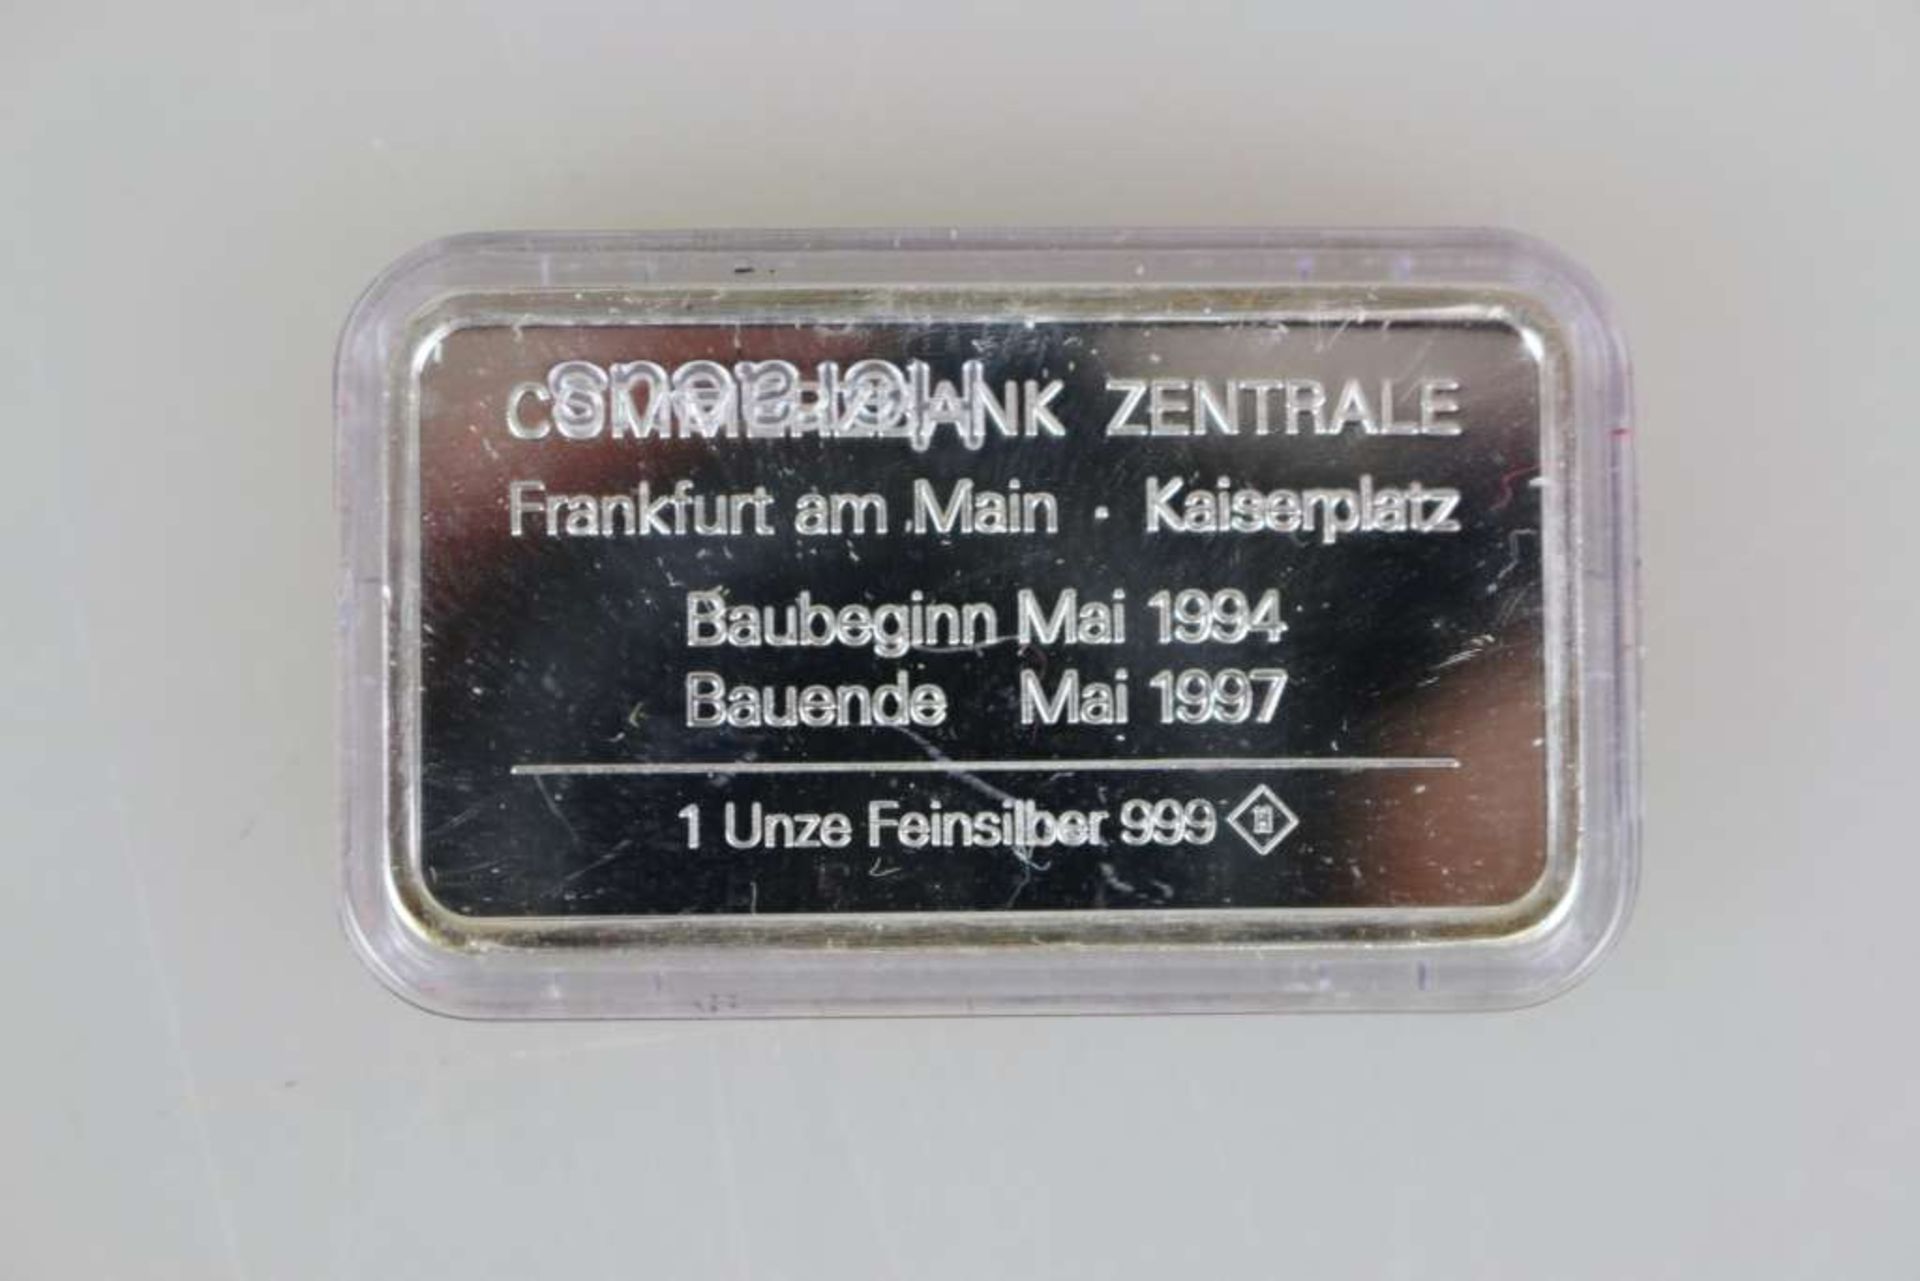 5 Silberbarren Commerzbank Tower, jeweils 1 Unze Feinsilber 999, herausgegeben anlässlich der - Image 3 of 3